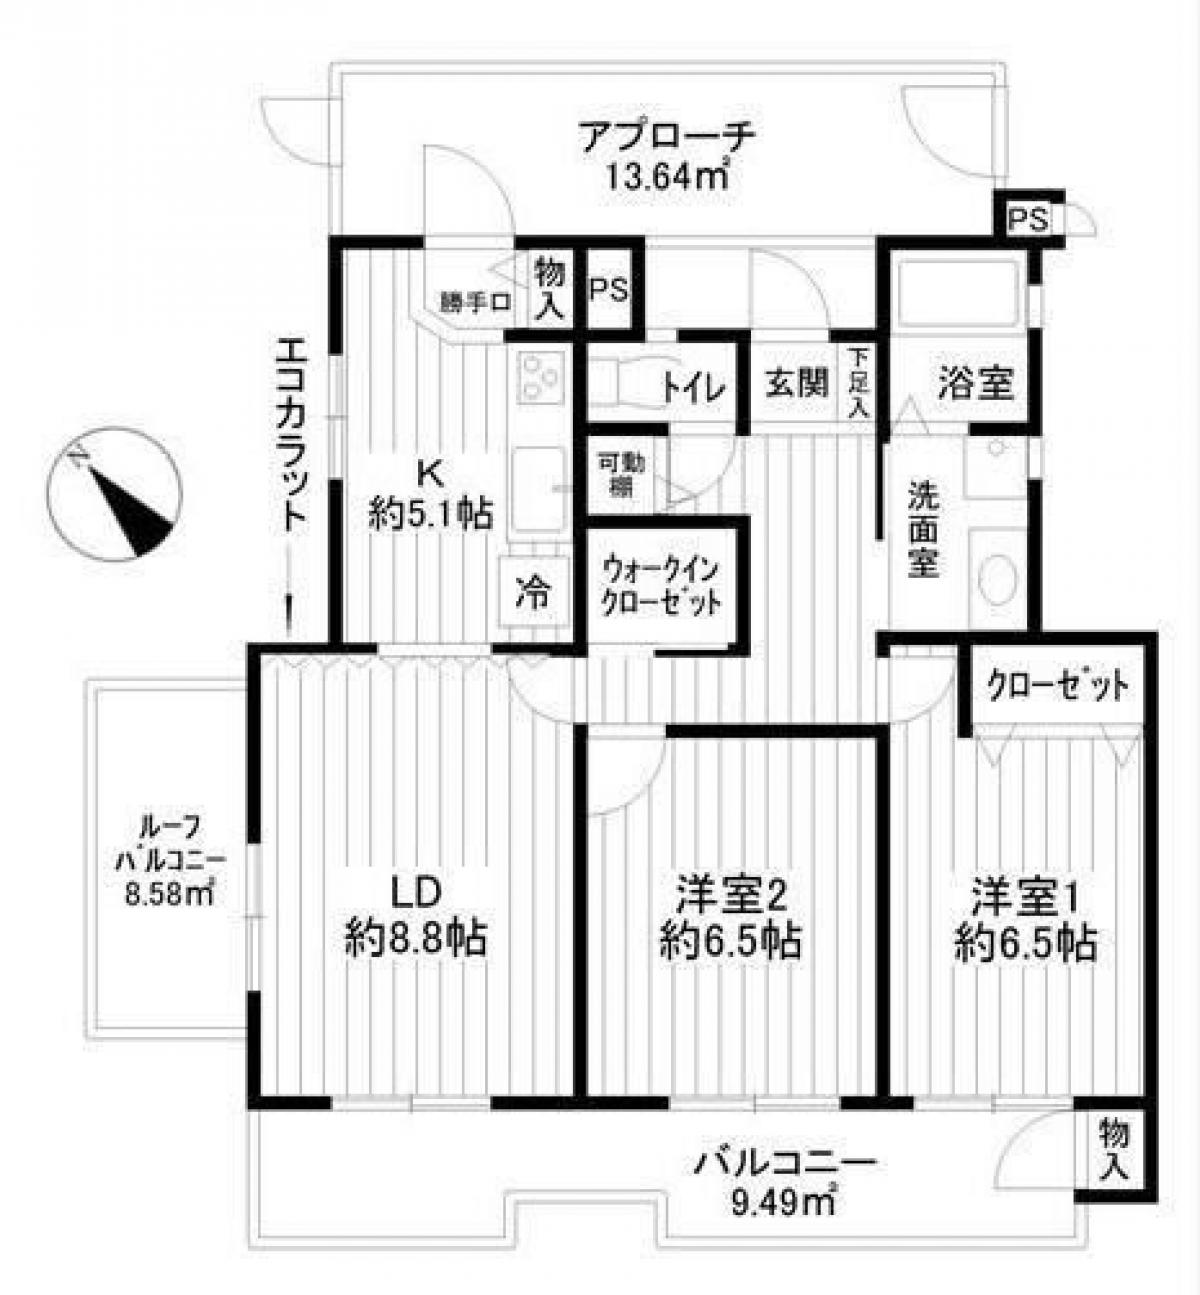 Picture of Apartment For Sale in Kawasaki Shi Miyamae Ku, Kanagawa, Japan